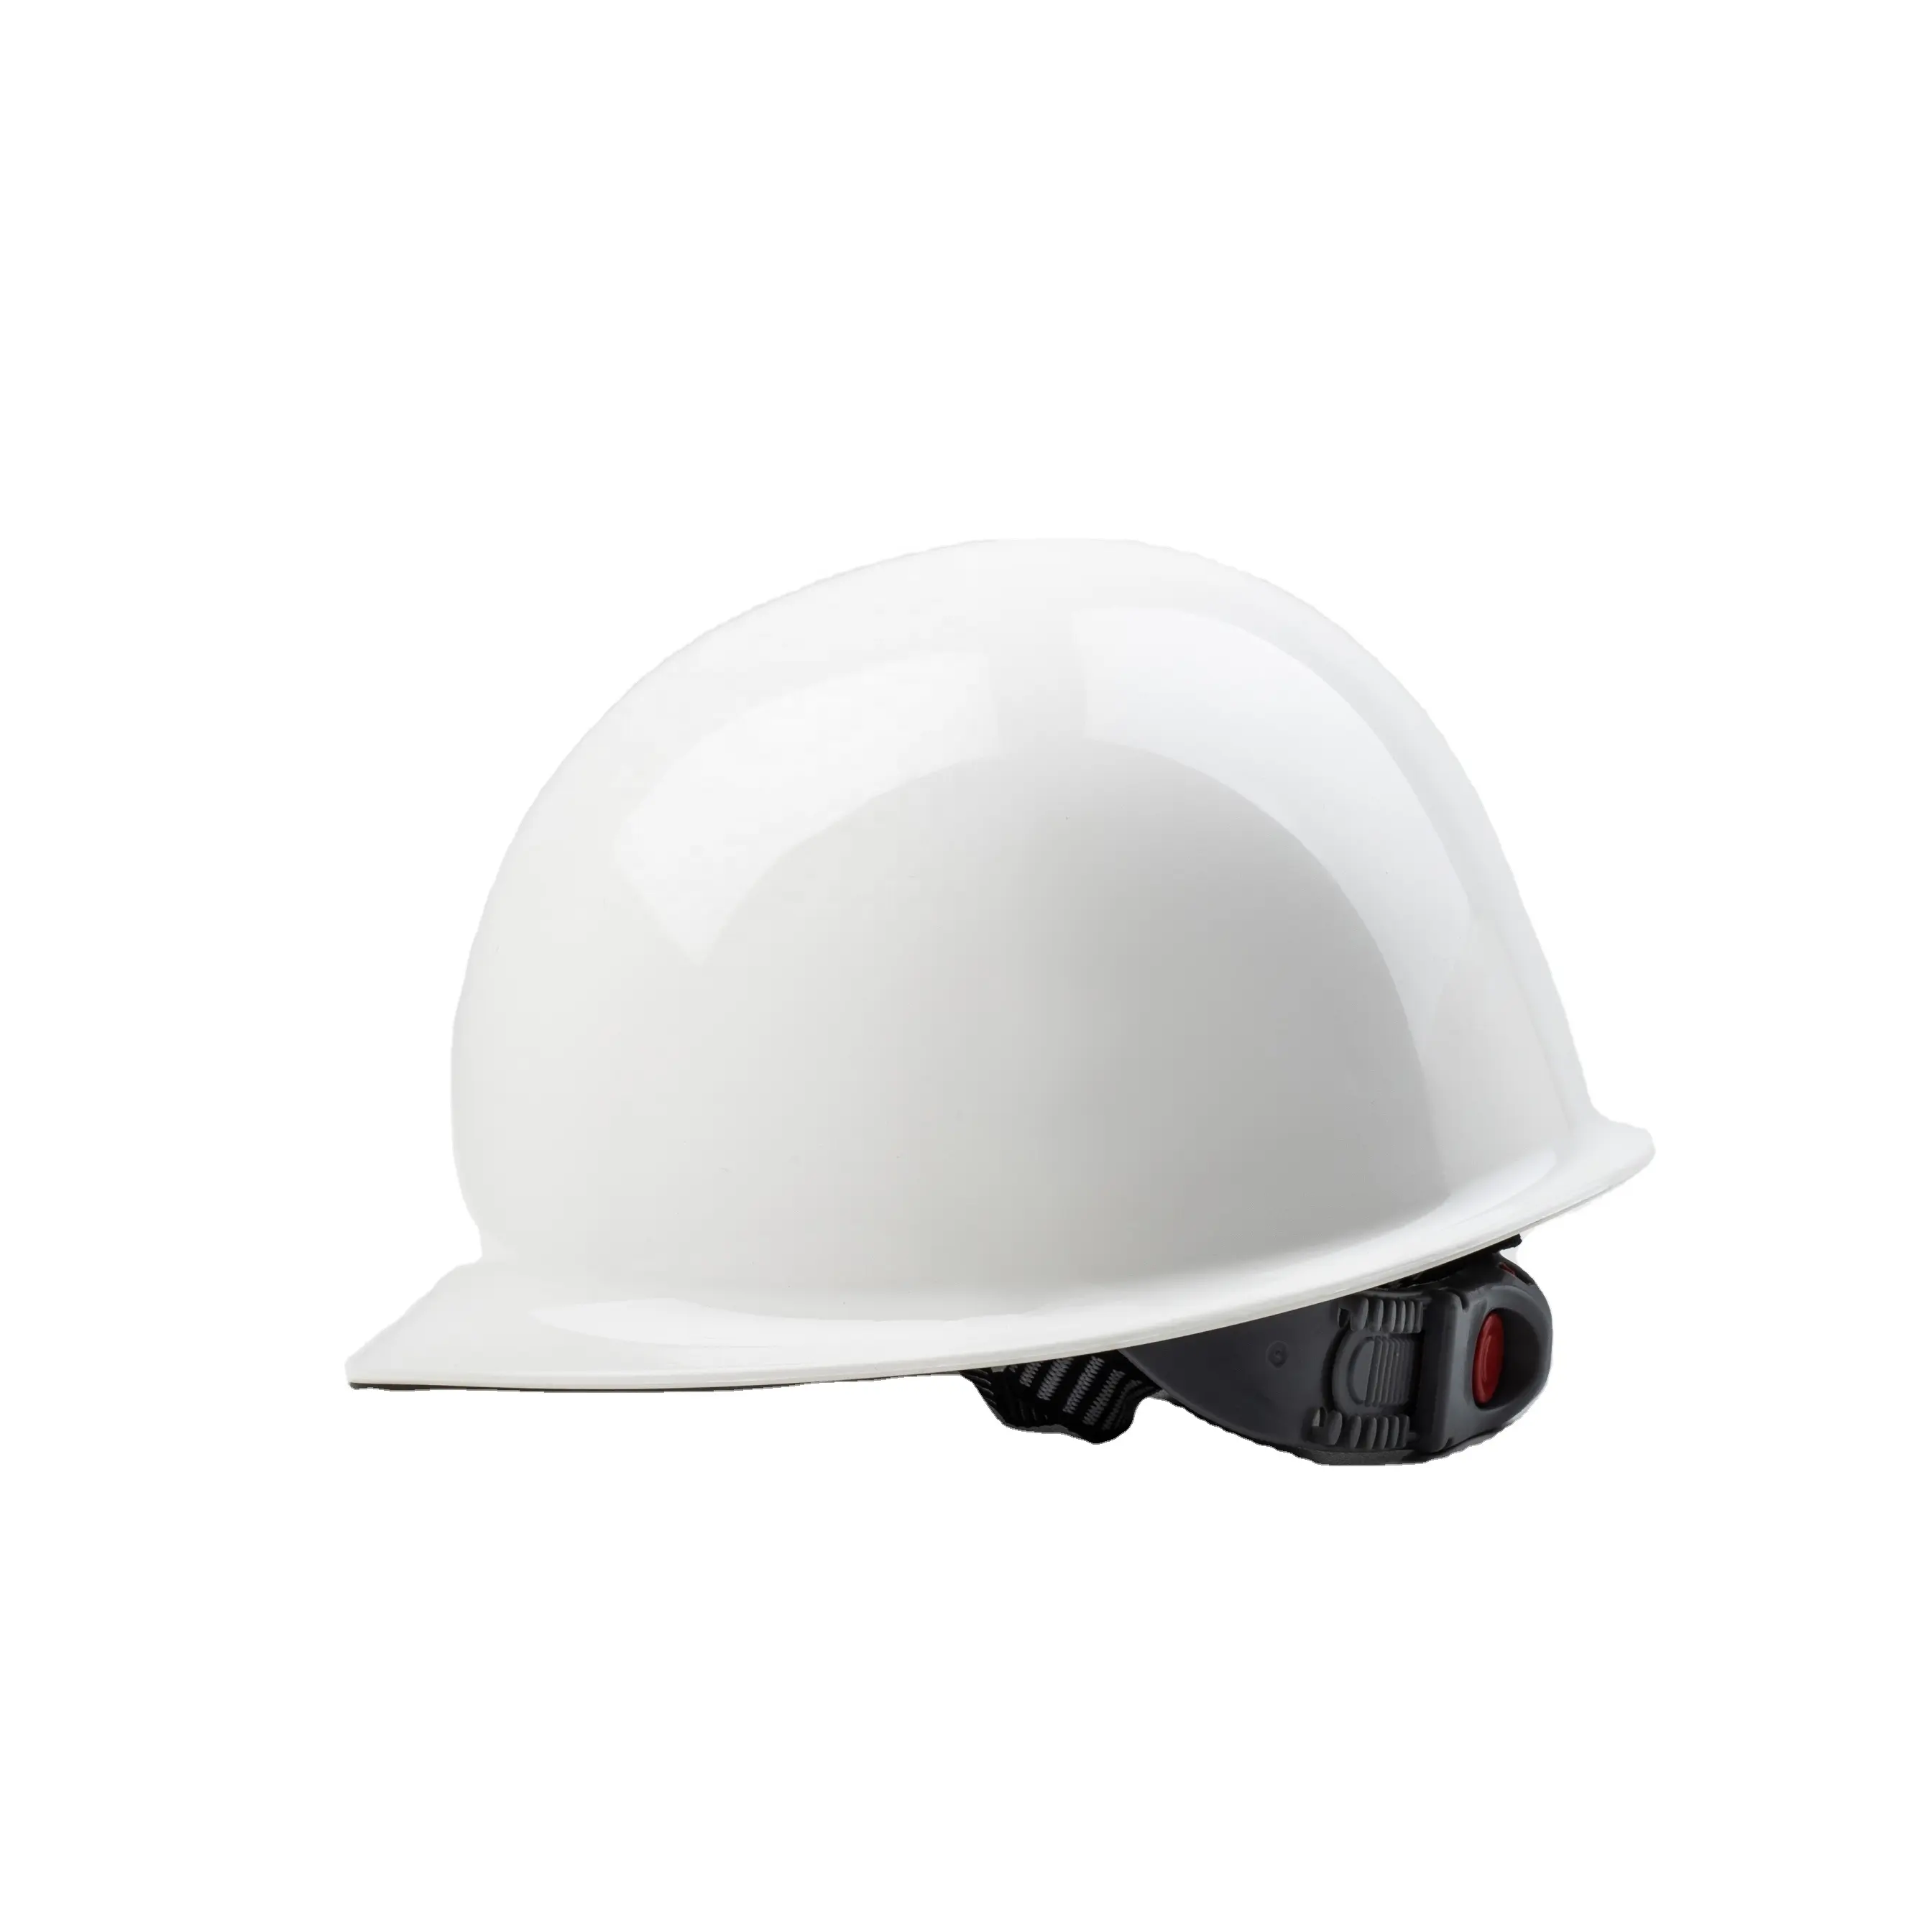 Petrol gazı madenciliği için güvenlik baretler kafa koruması için ayarlanabilir stil güvenlik kaskları